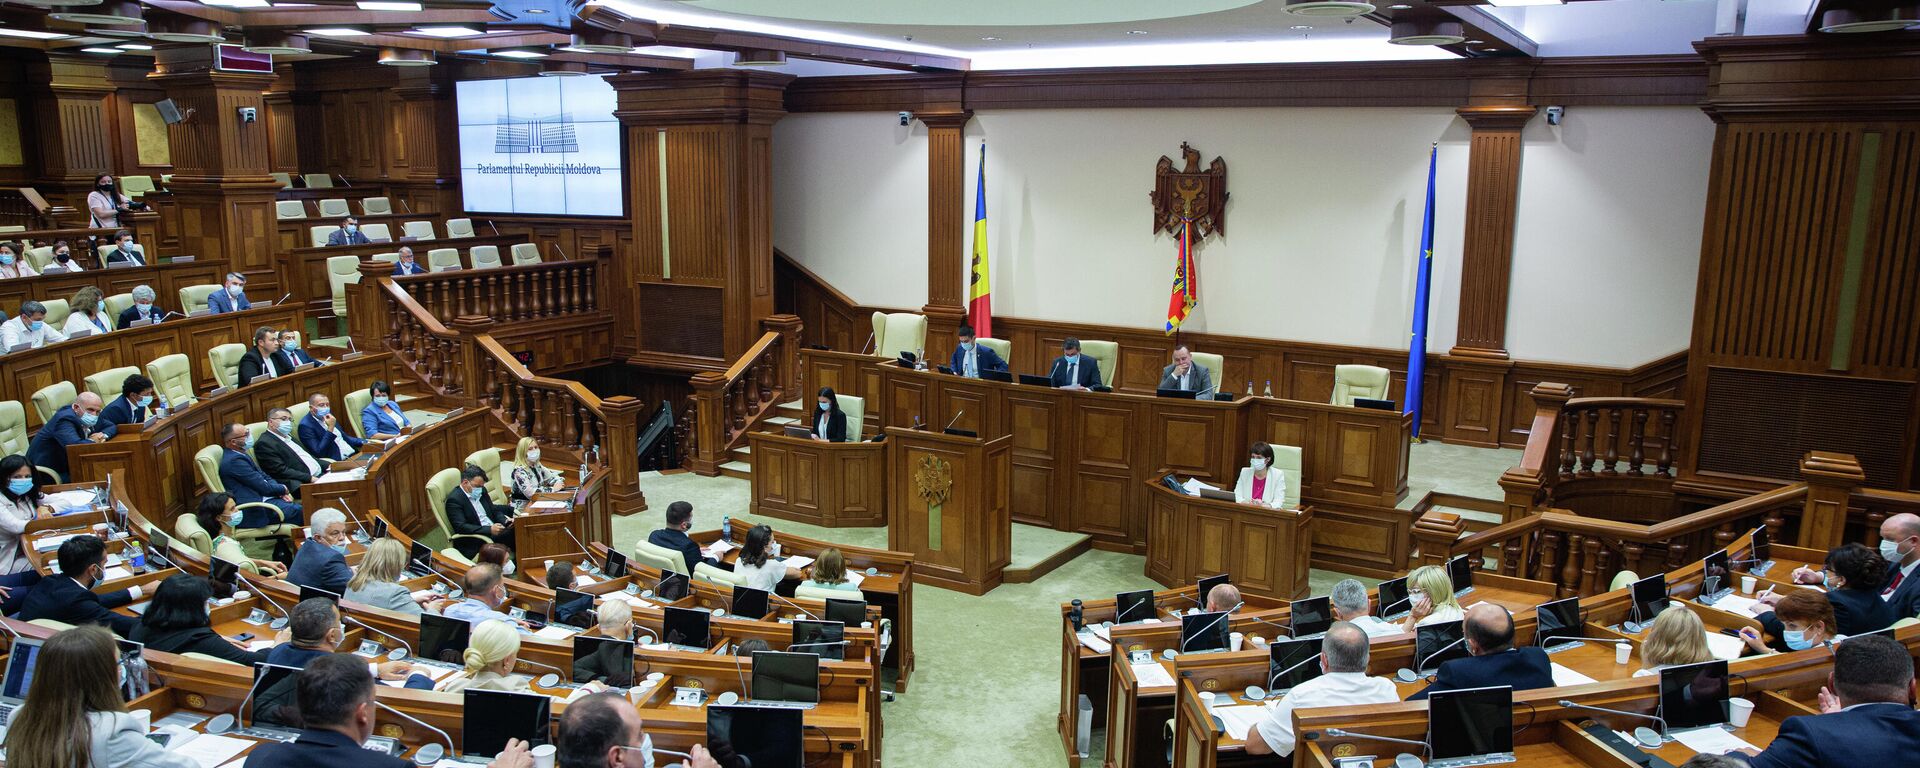 Deputați în Parlamentul Republicii Moldova  - Sputnik Moldova, 1920, 09.09.2021